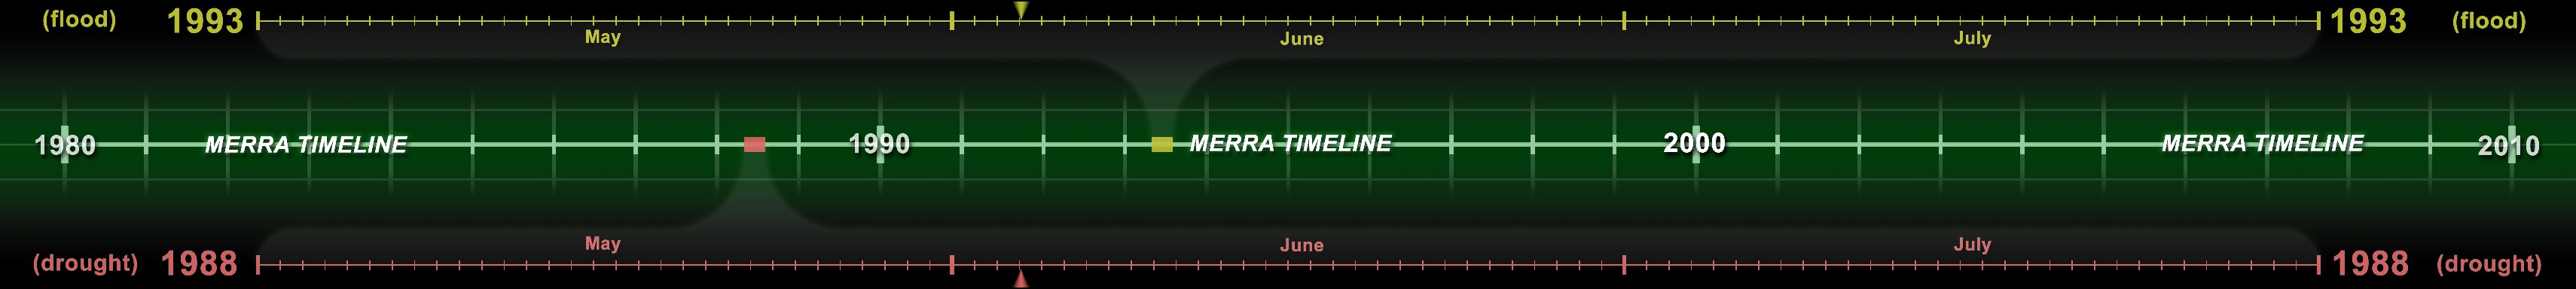 Fully composited version of MERRA timeline (all 5 tiles together)